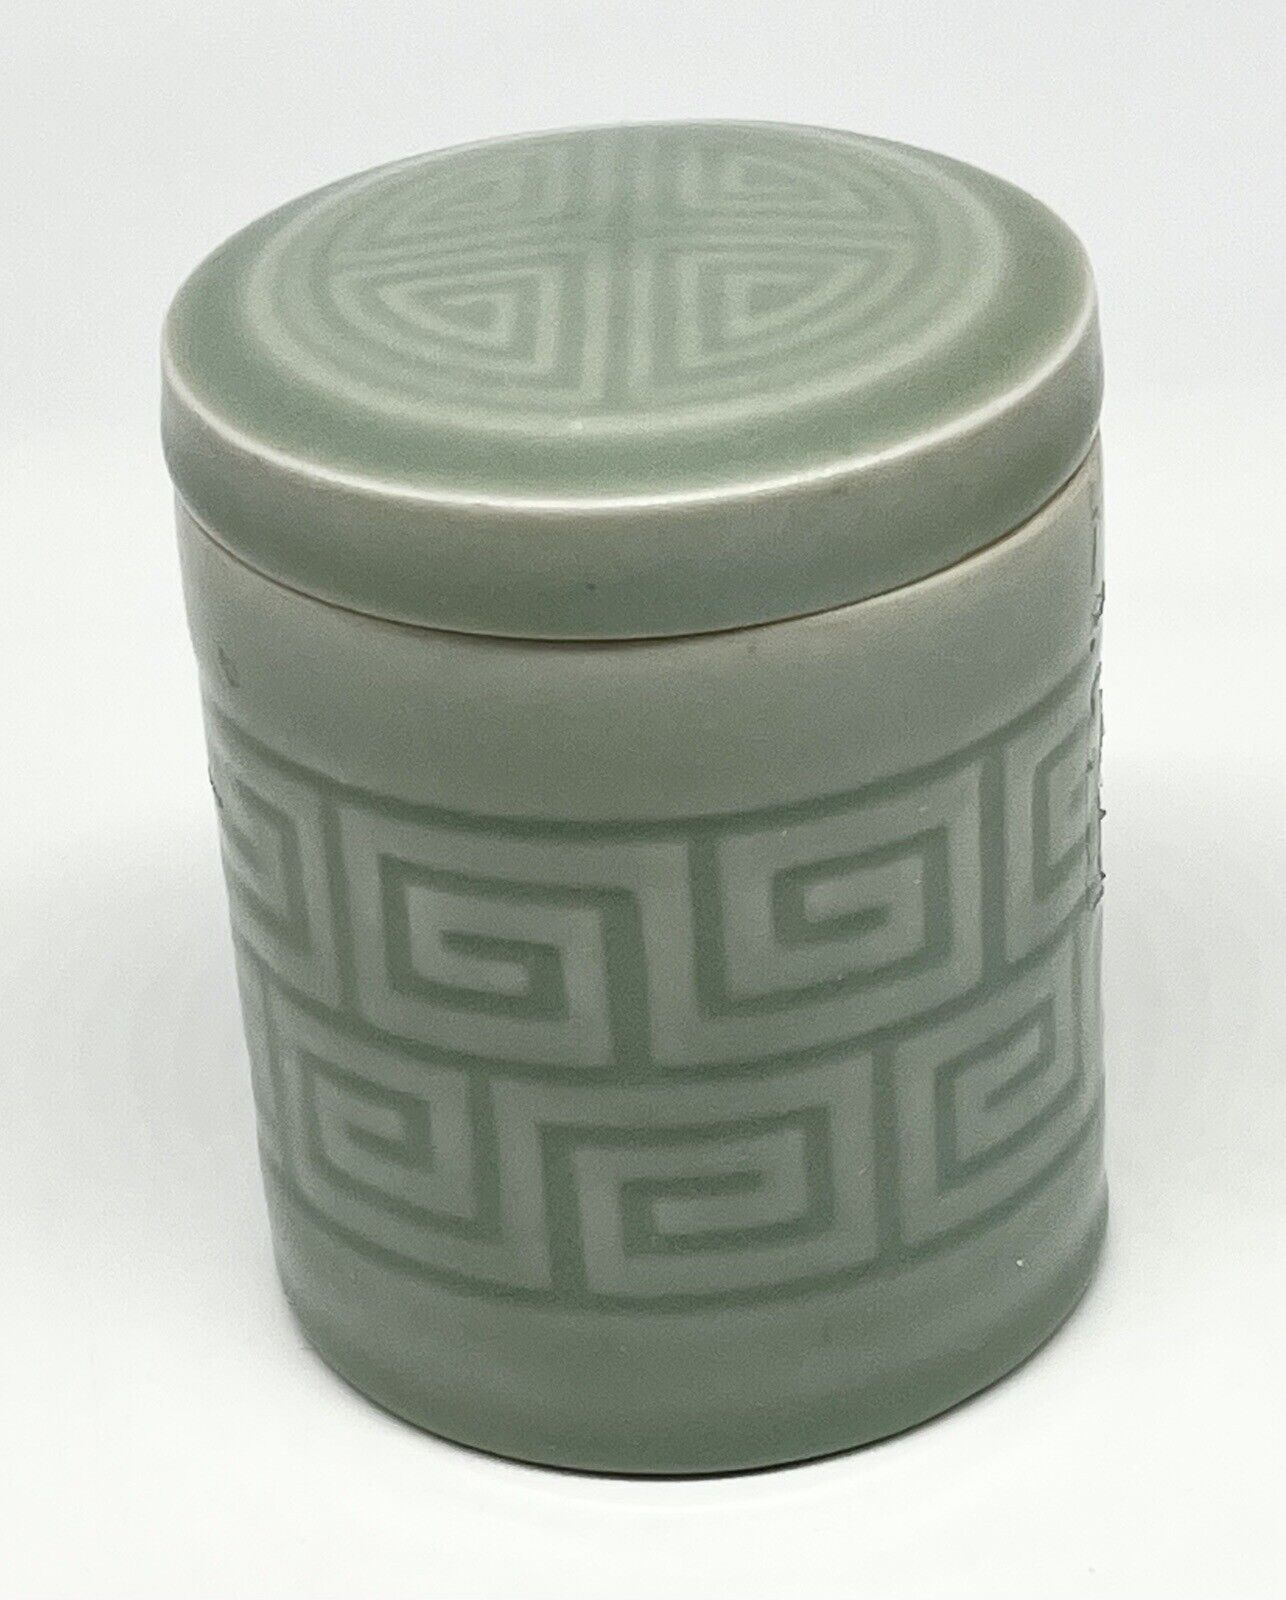 Vintage Chinese Celadon Glaze MCM Porcelain Design Lid Jar Dish Light Green